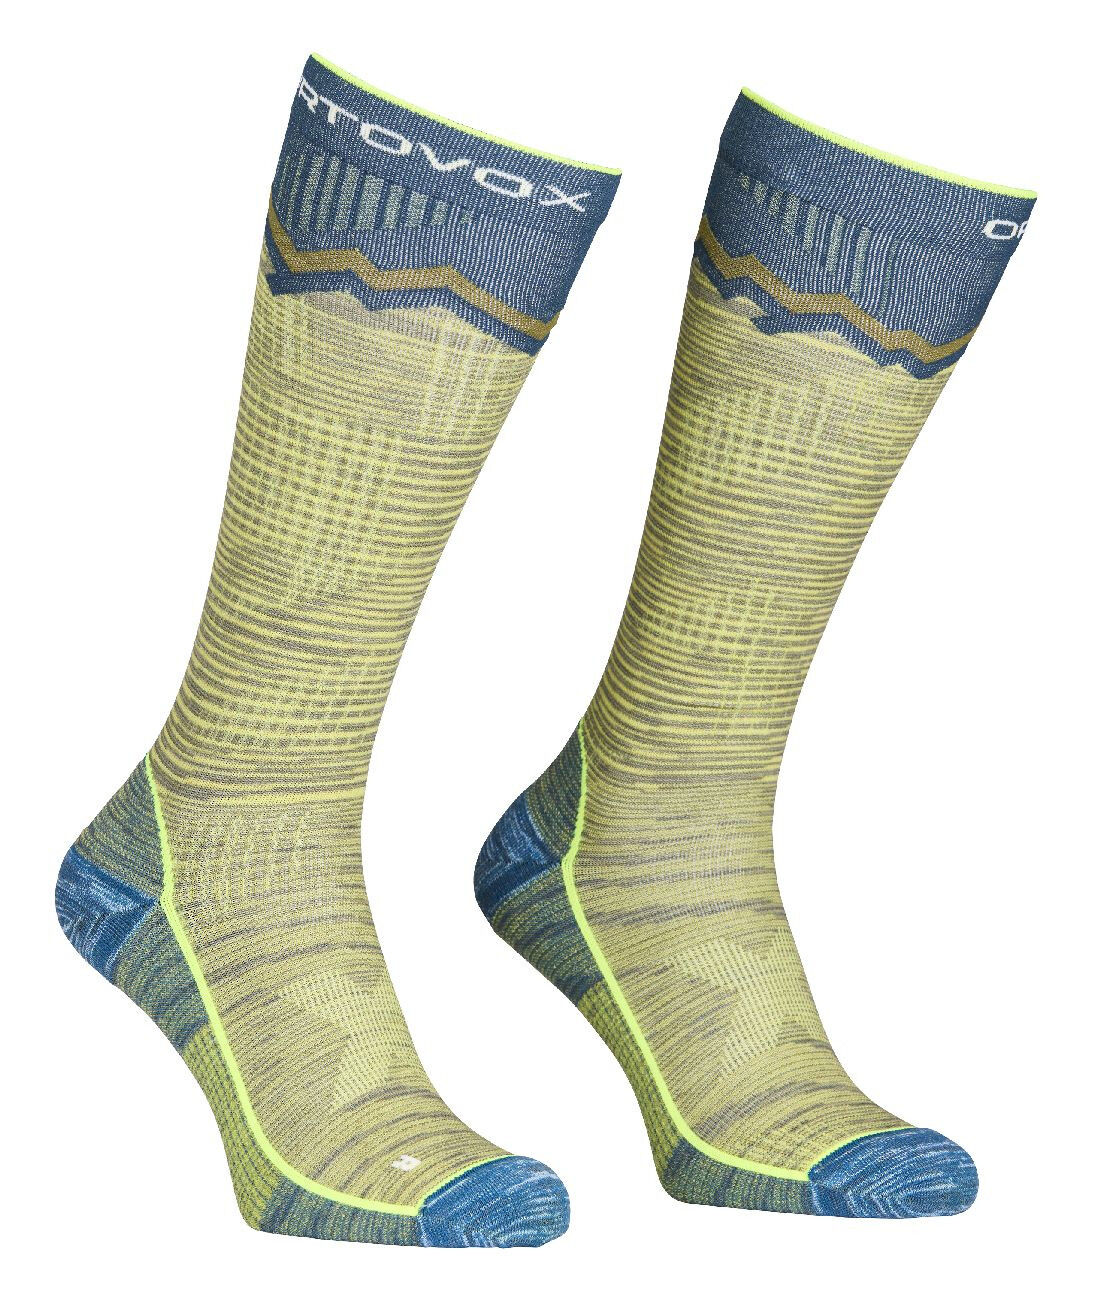 Ortovox Tour Long Socks - Skisokken - Heren